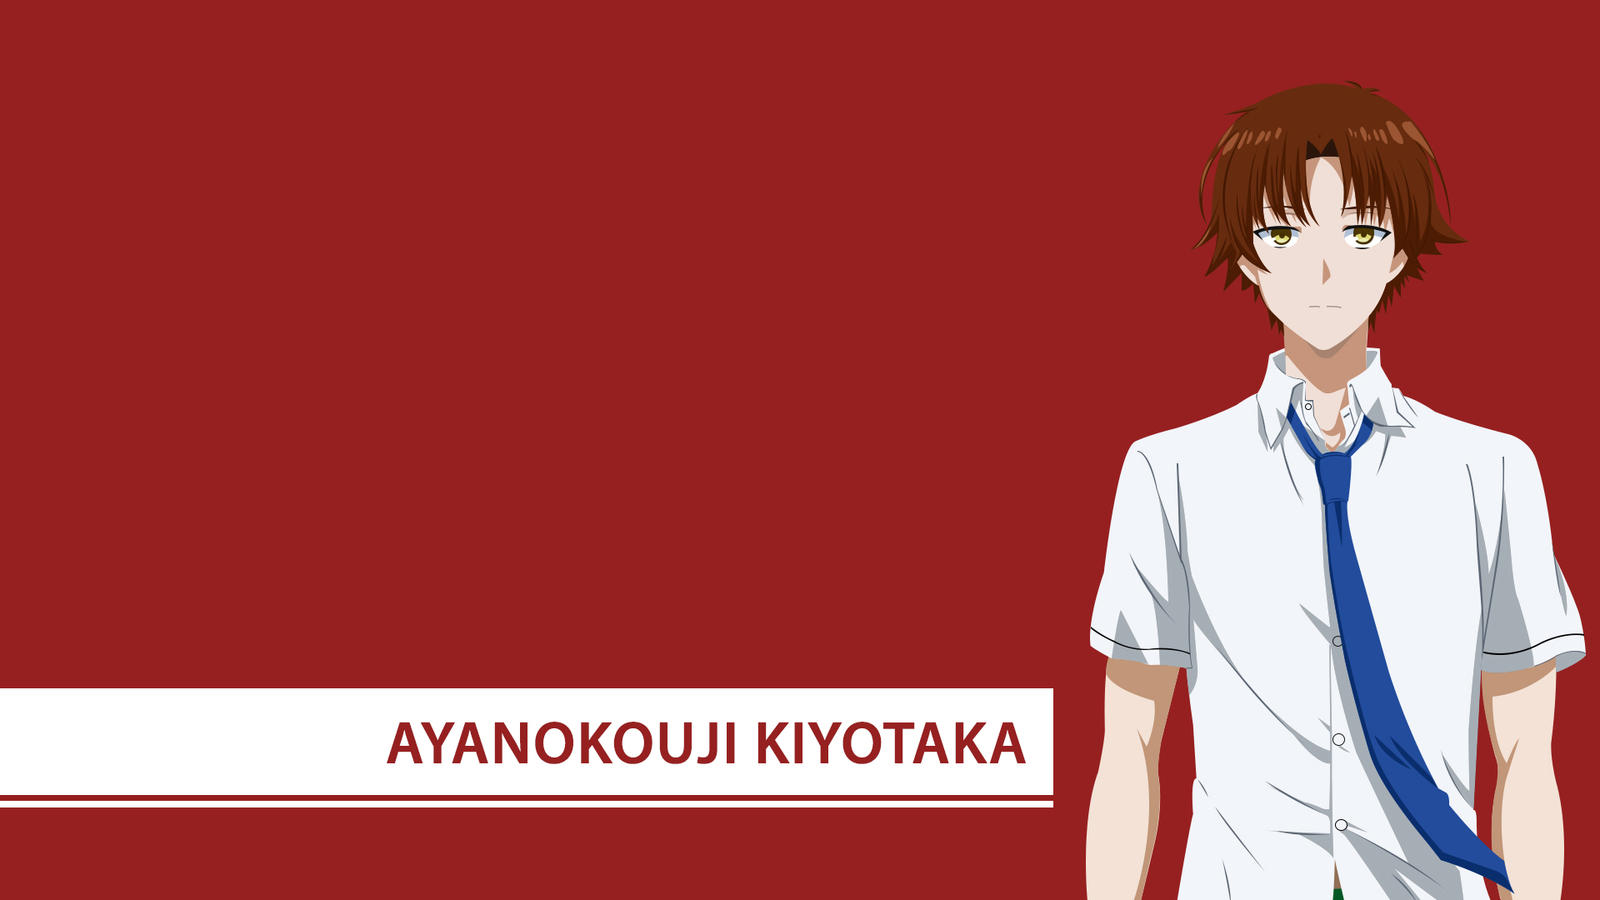 Ayanokouji Kiyotaka by Yuukinoy on DeviantArt